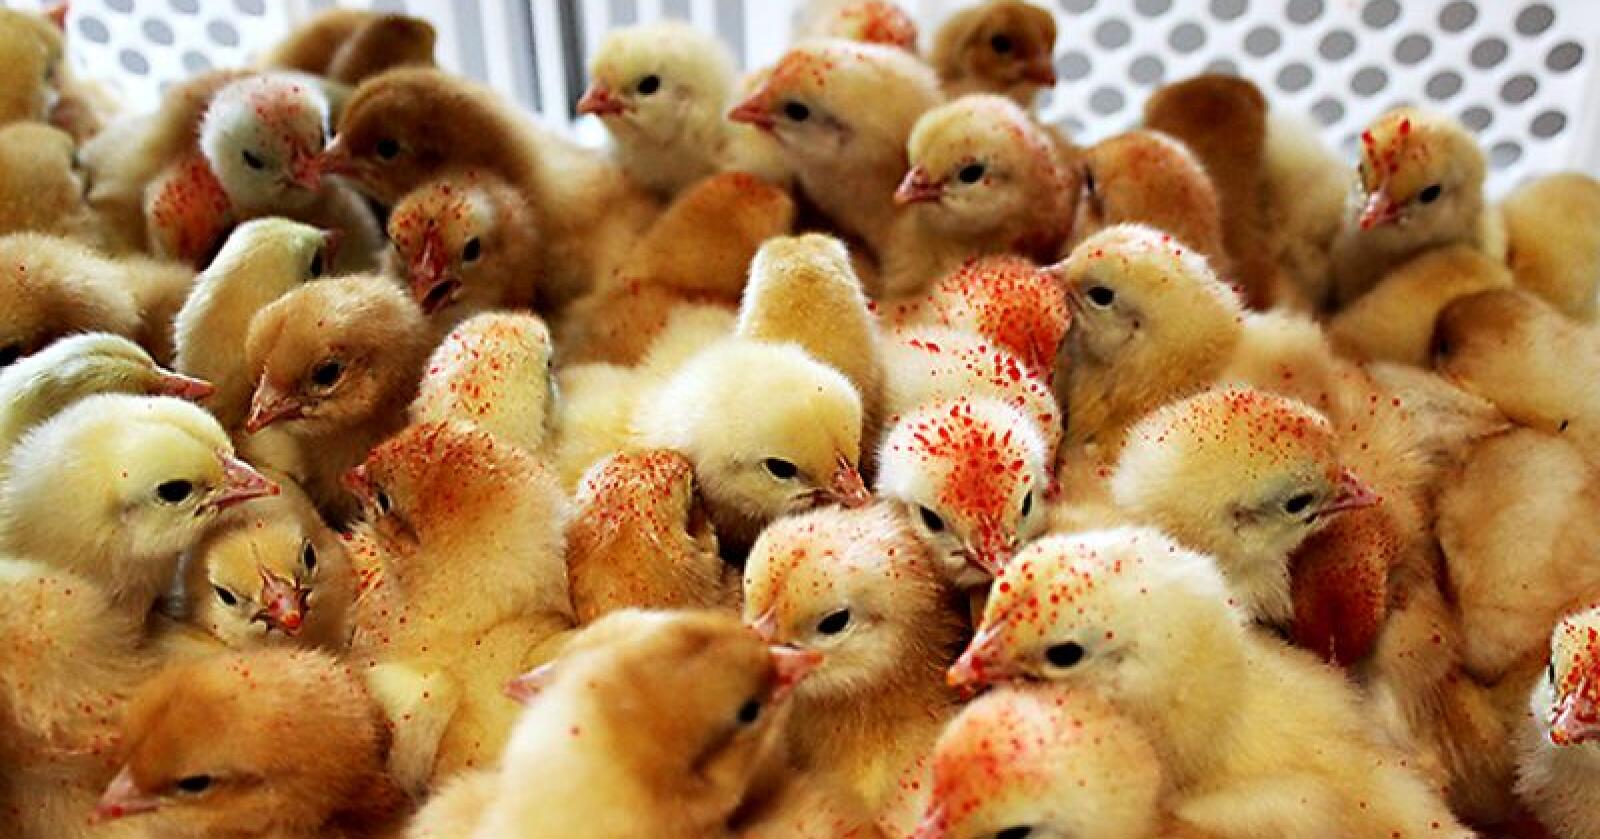 Sammenliknet med andre europeiske land har norskprodusert kylling aller lavest forekomst av resistens, viser en ny rapport.   Foto: Camilla Mellemstrand